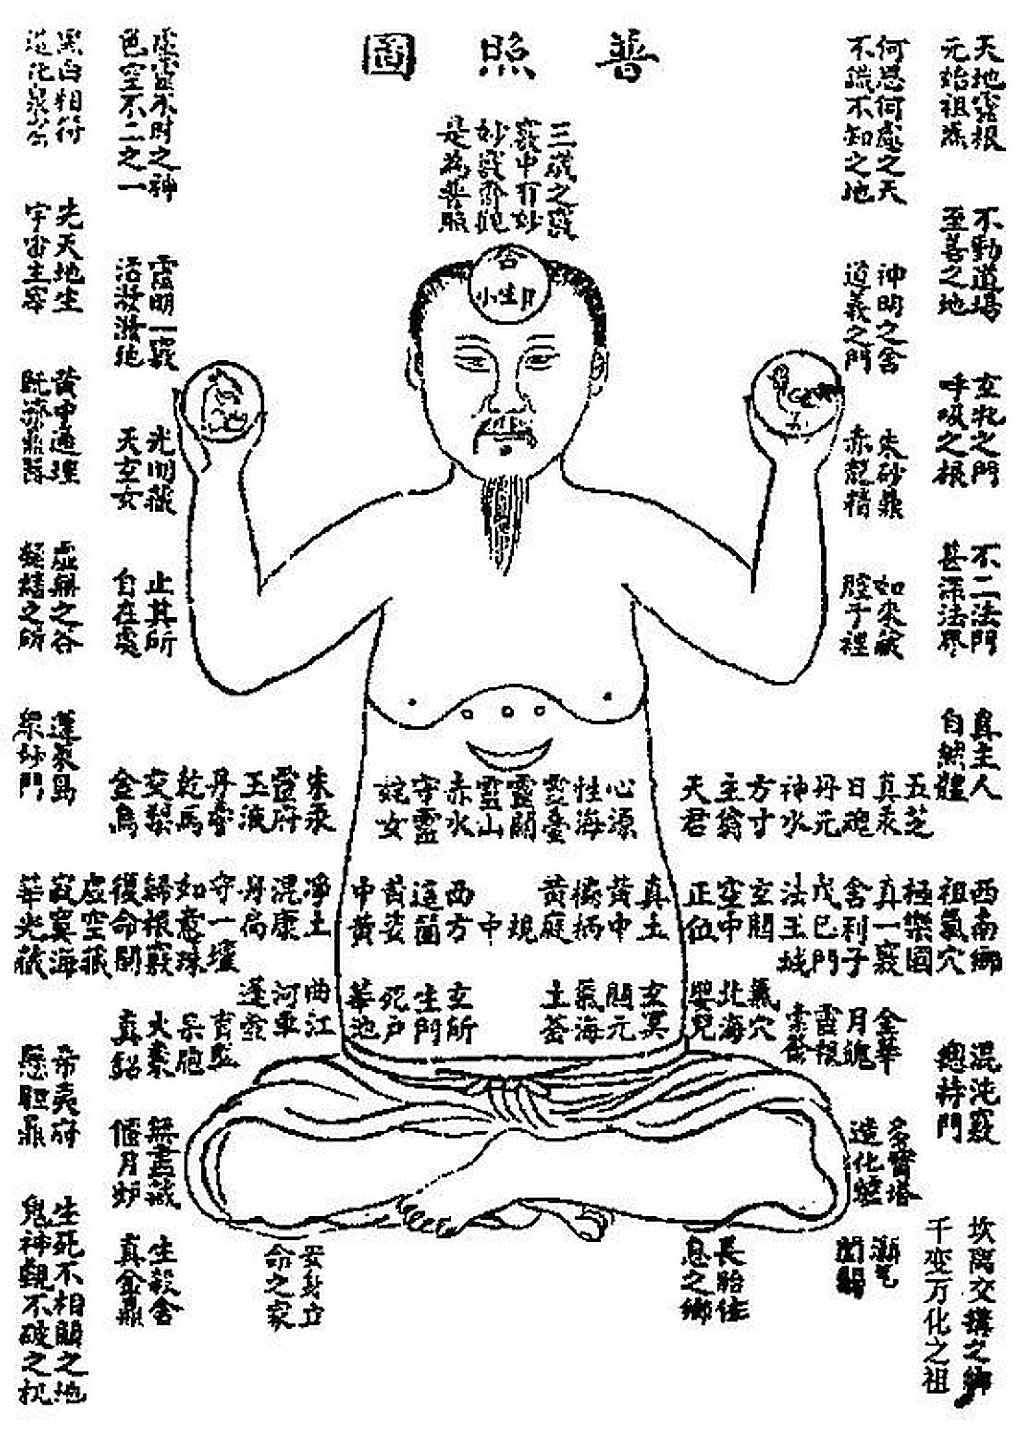 Racine spirituelle du Ciel et de la Terre dans le corps in Xing Ming Gui Zhi